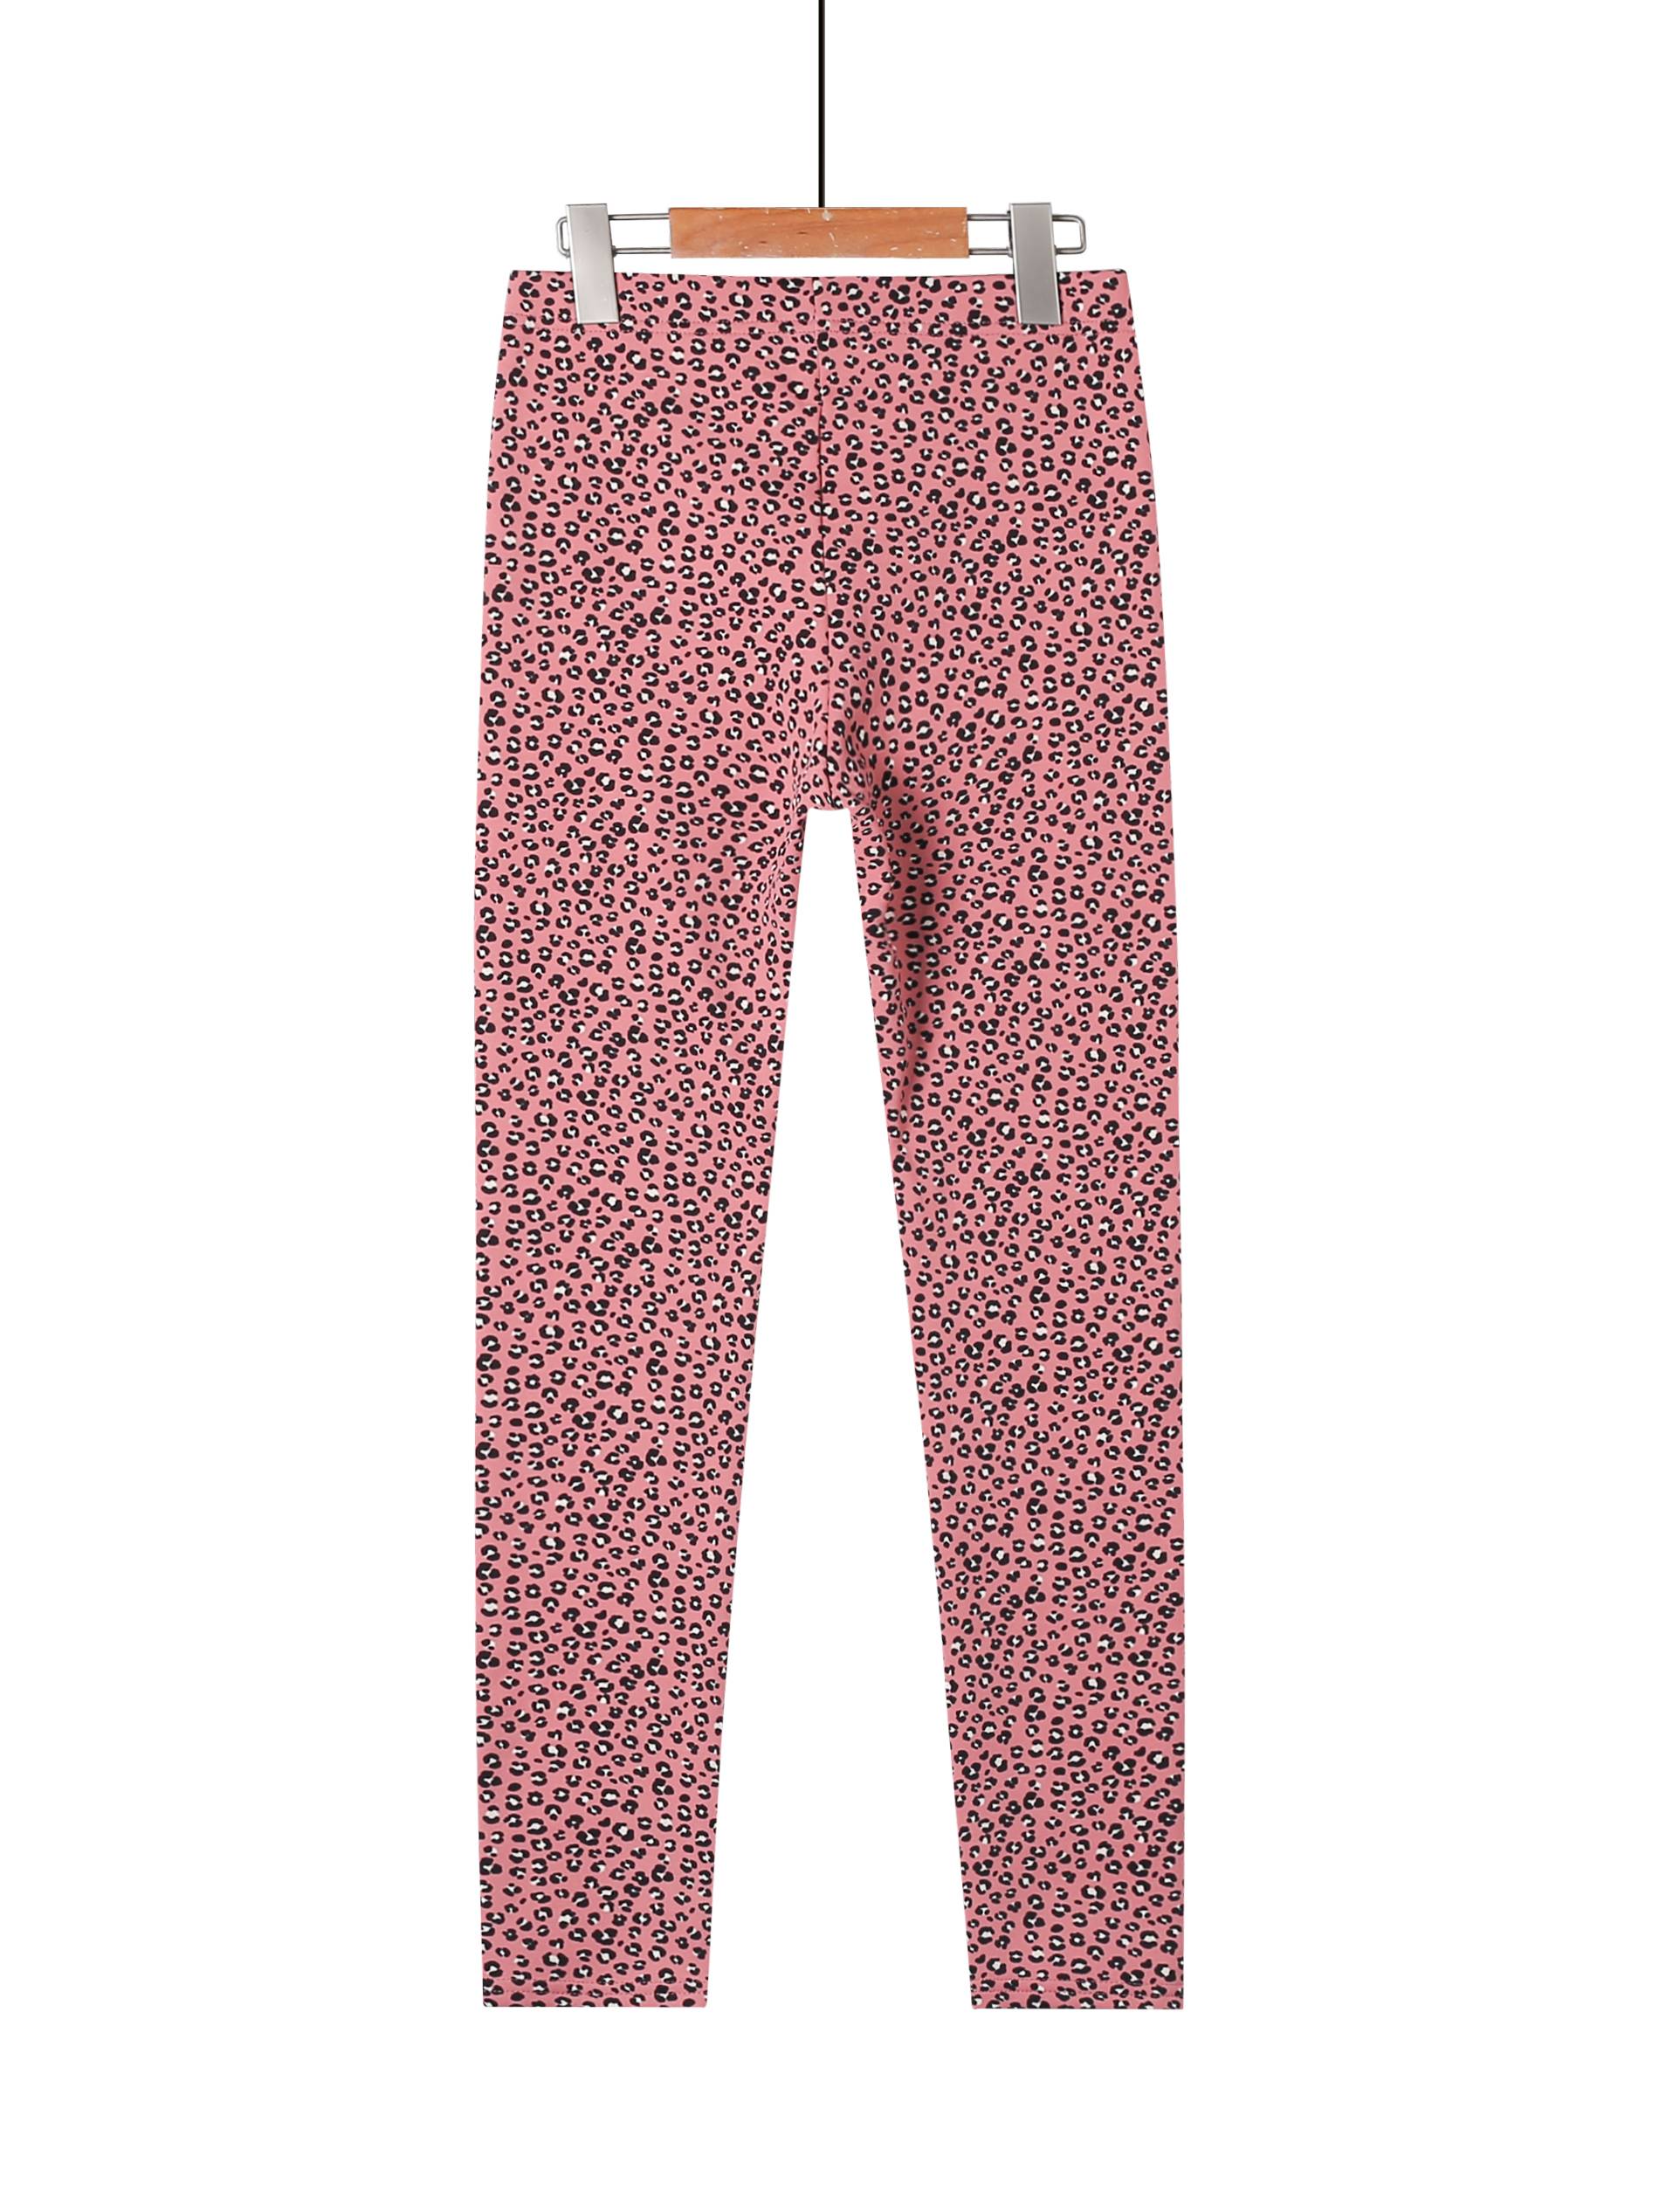 leggings-Leopard Girl\'s print